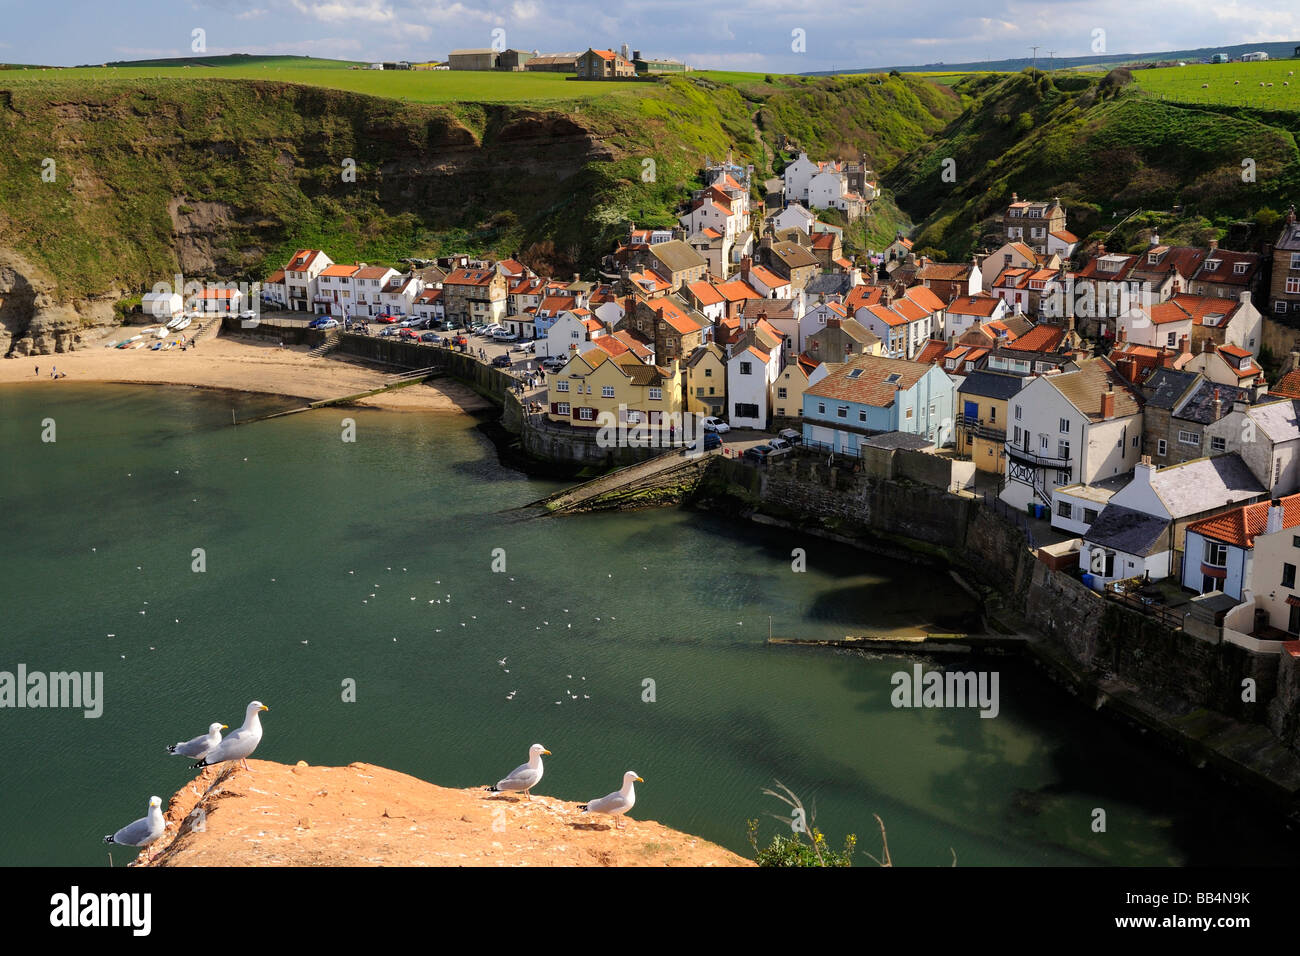 The coastal village of Staithes nestled beneath eroding cliffs on the Yorkshire coast England UK Stock Photo